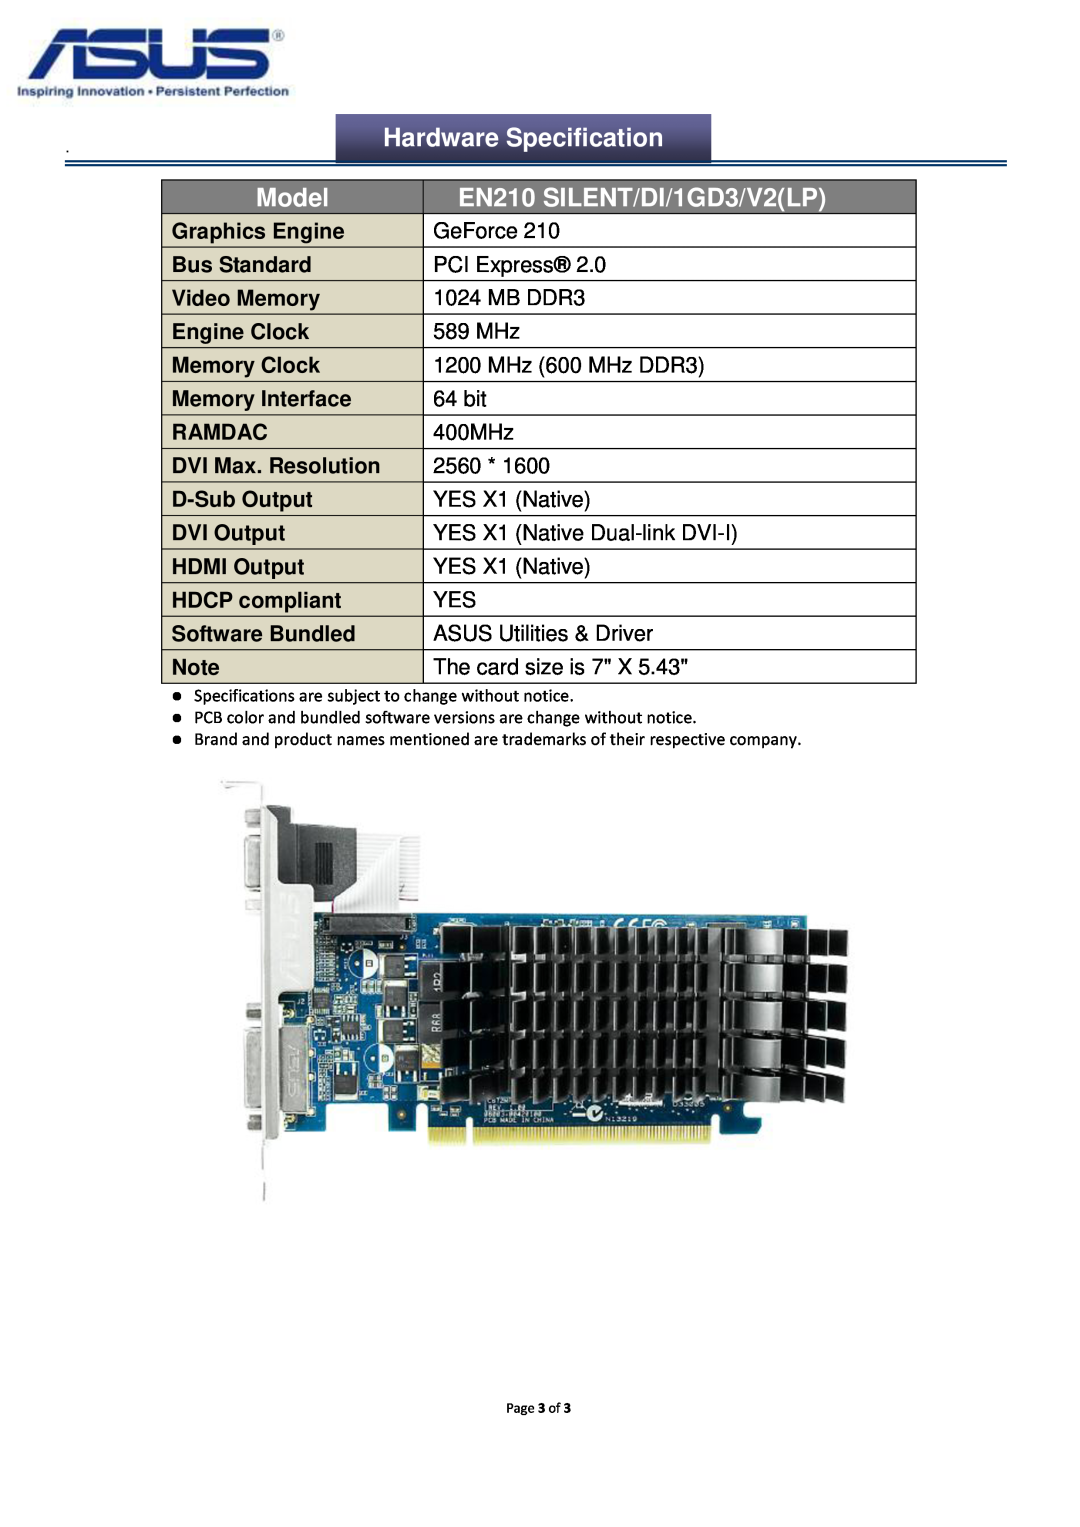 Asus EN210SILENTDI1GD3V2LP manual Model, EN210 SILENT/DI/1GD3/V2LP, Hardware Specification 